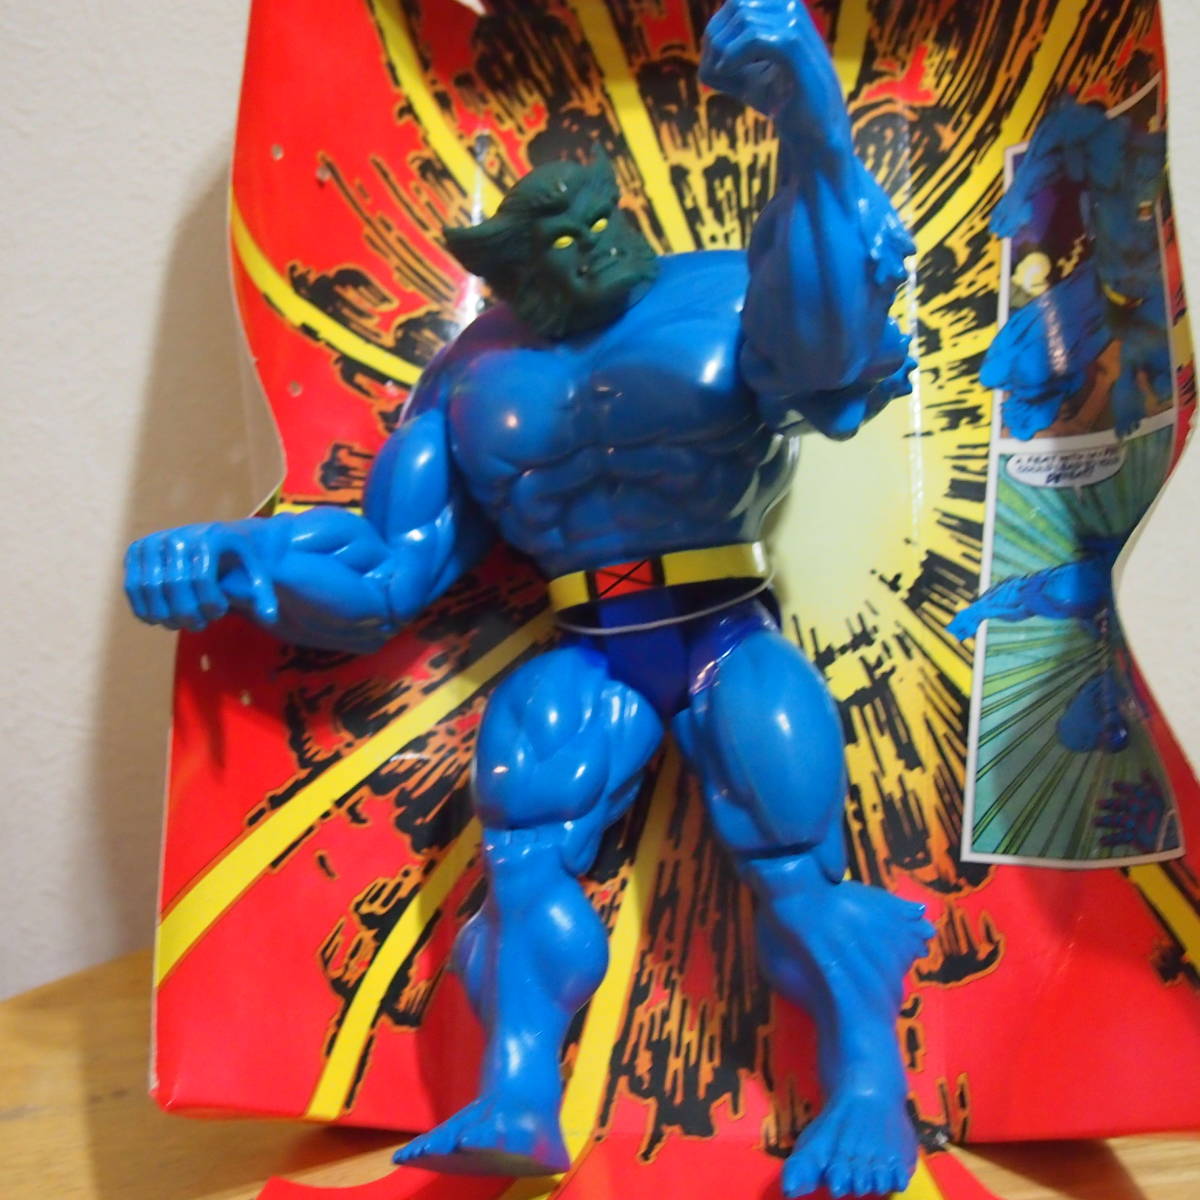 TOYBIZ X-Men Deluxe 10-Inch Action Figures BEAST Deluxe 10 дюймовый action фигурка Be -тактный 